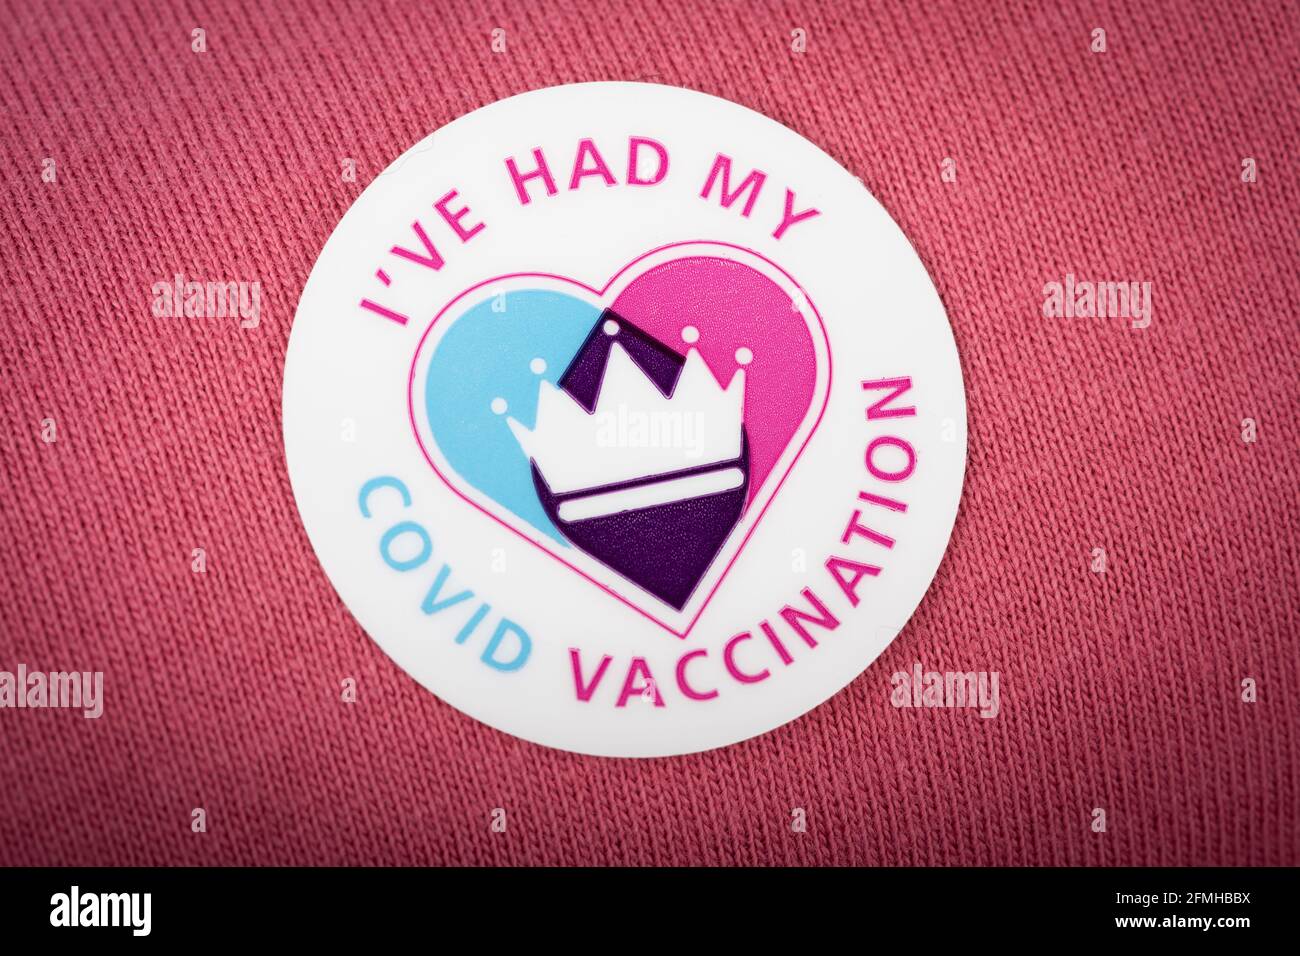 La insignia que dice 'he recibido mi vacuna covid' en la ropa de una persona. Foto de stock